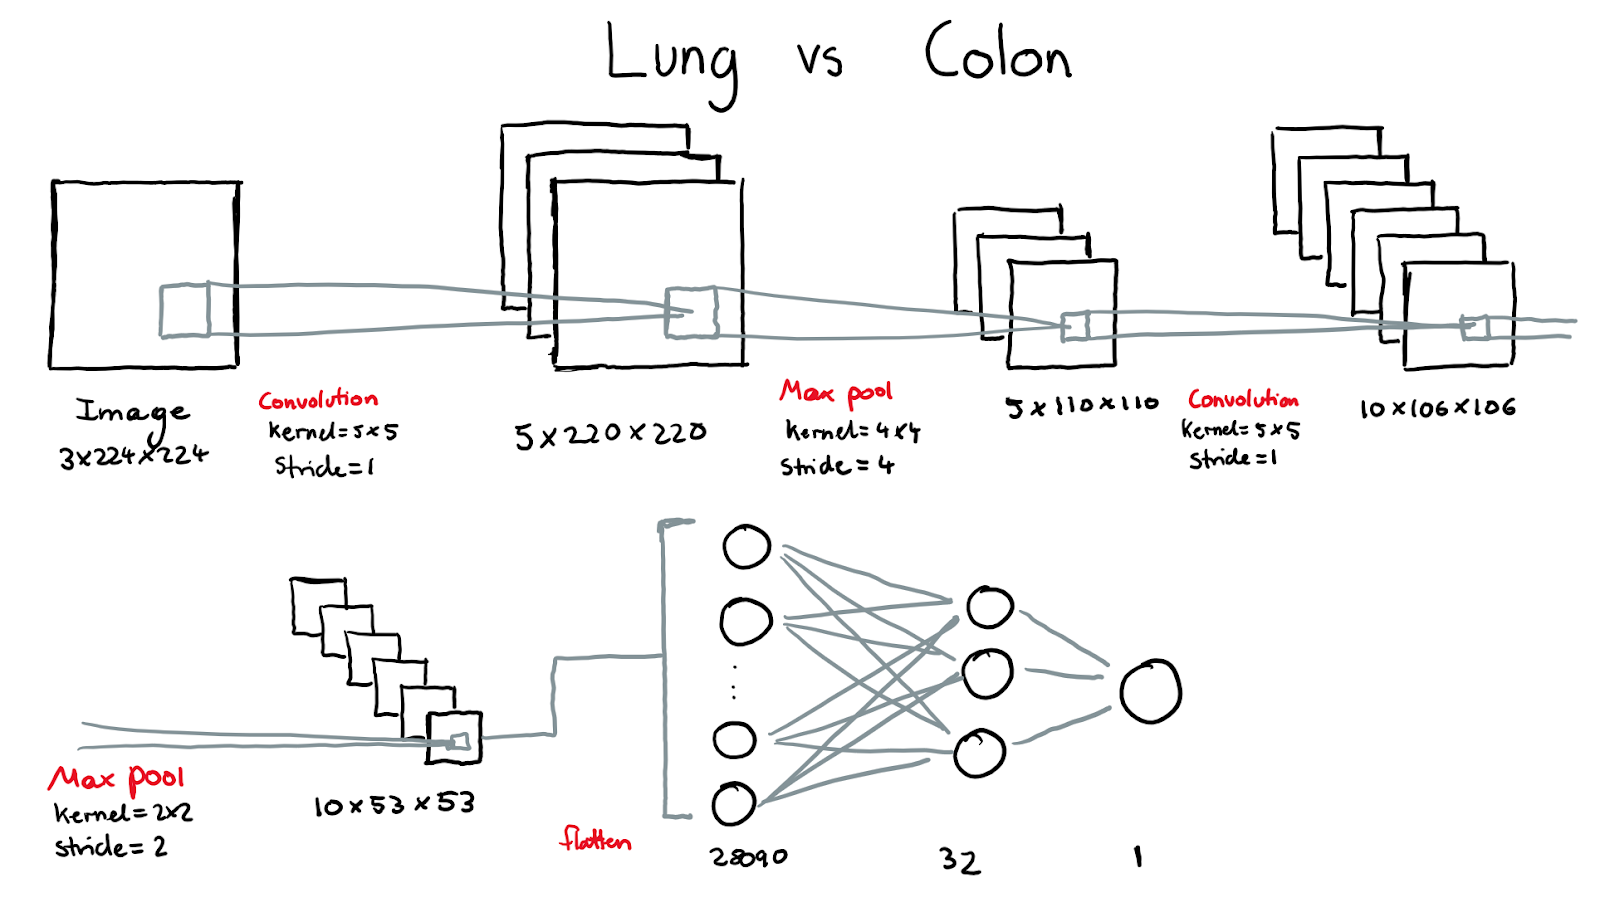 CNN #1 - Lung vs. Colon Architecture